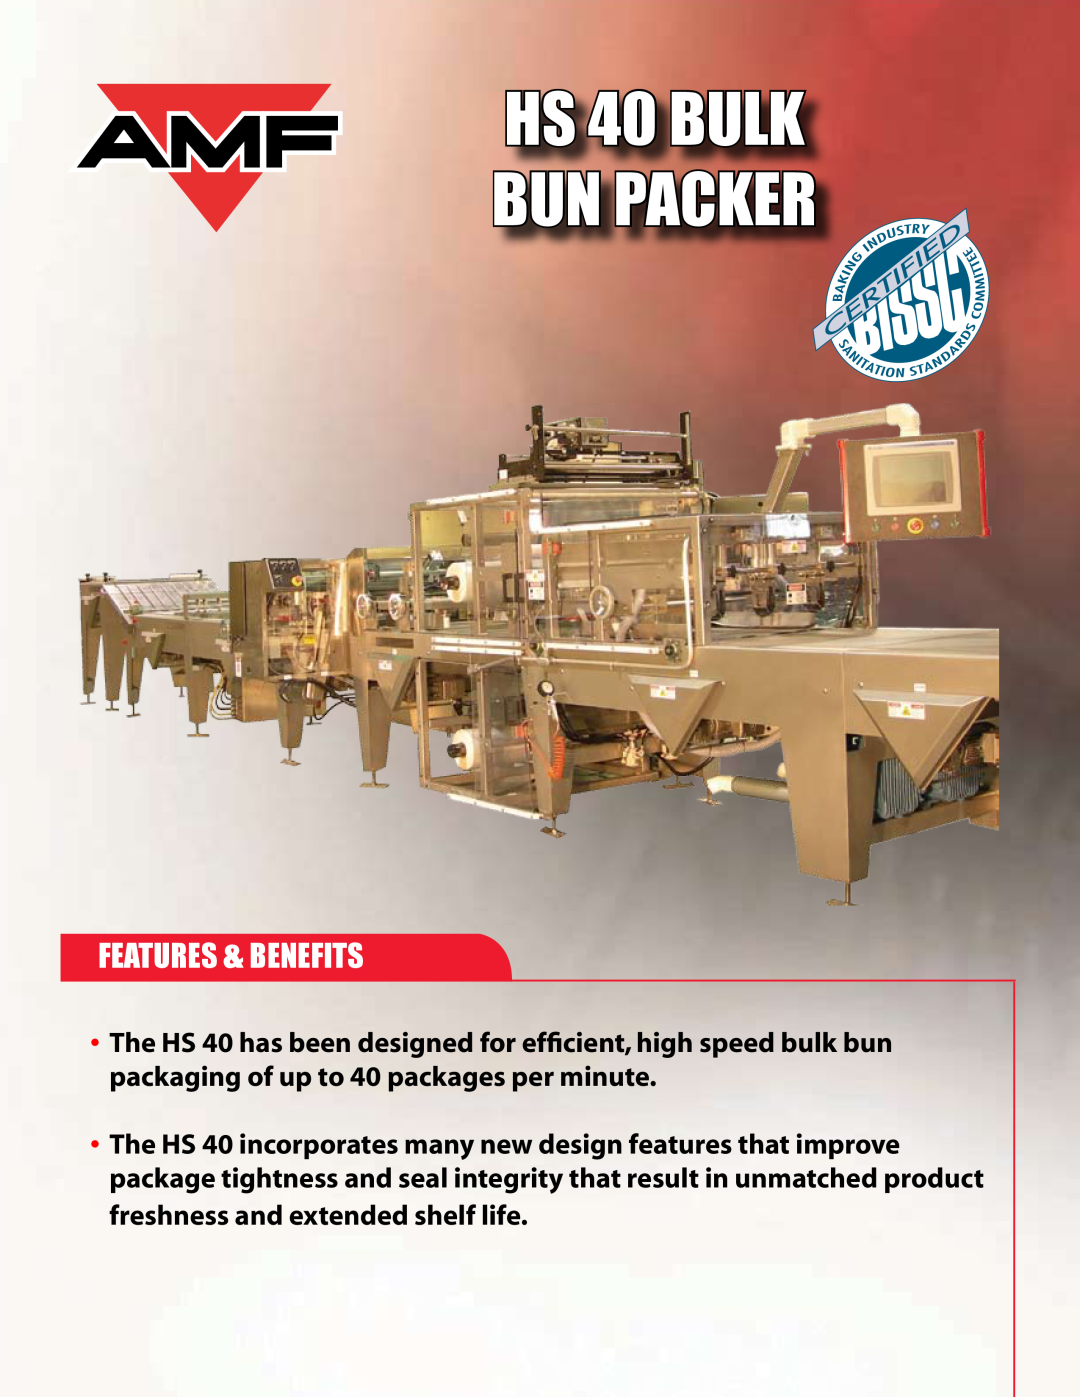 AMF manual Features & Benefits, HS 40 BULK BUN PACKER 